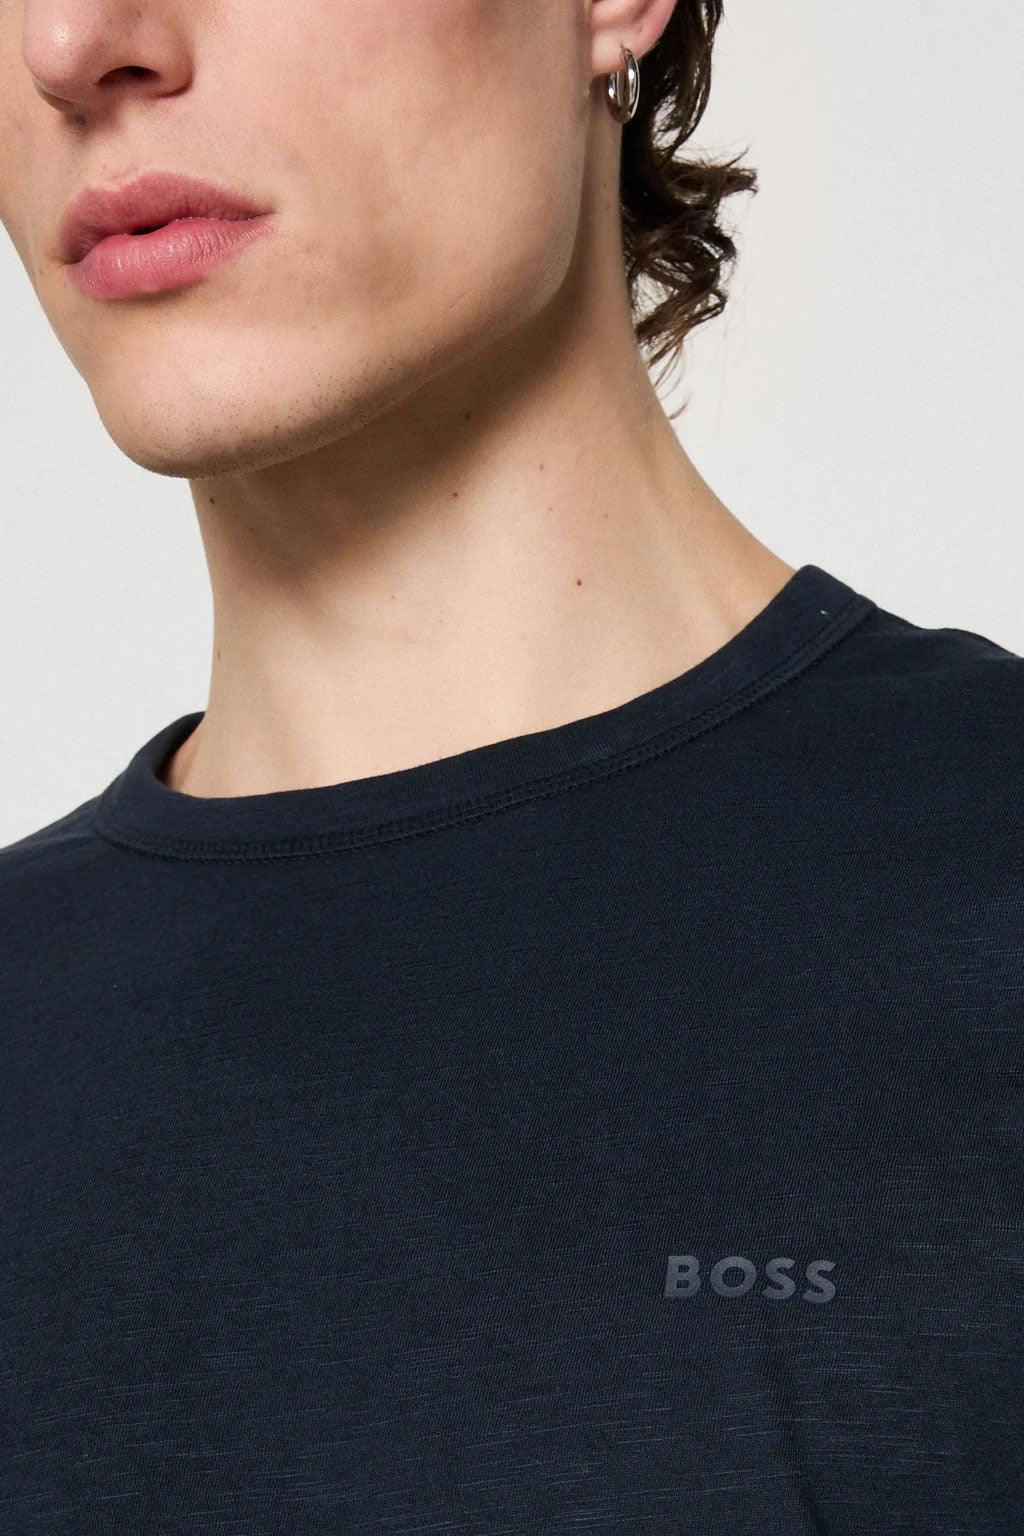 Hugo Boss t-shirt - Big Boss | the menswear concept